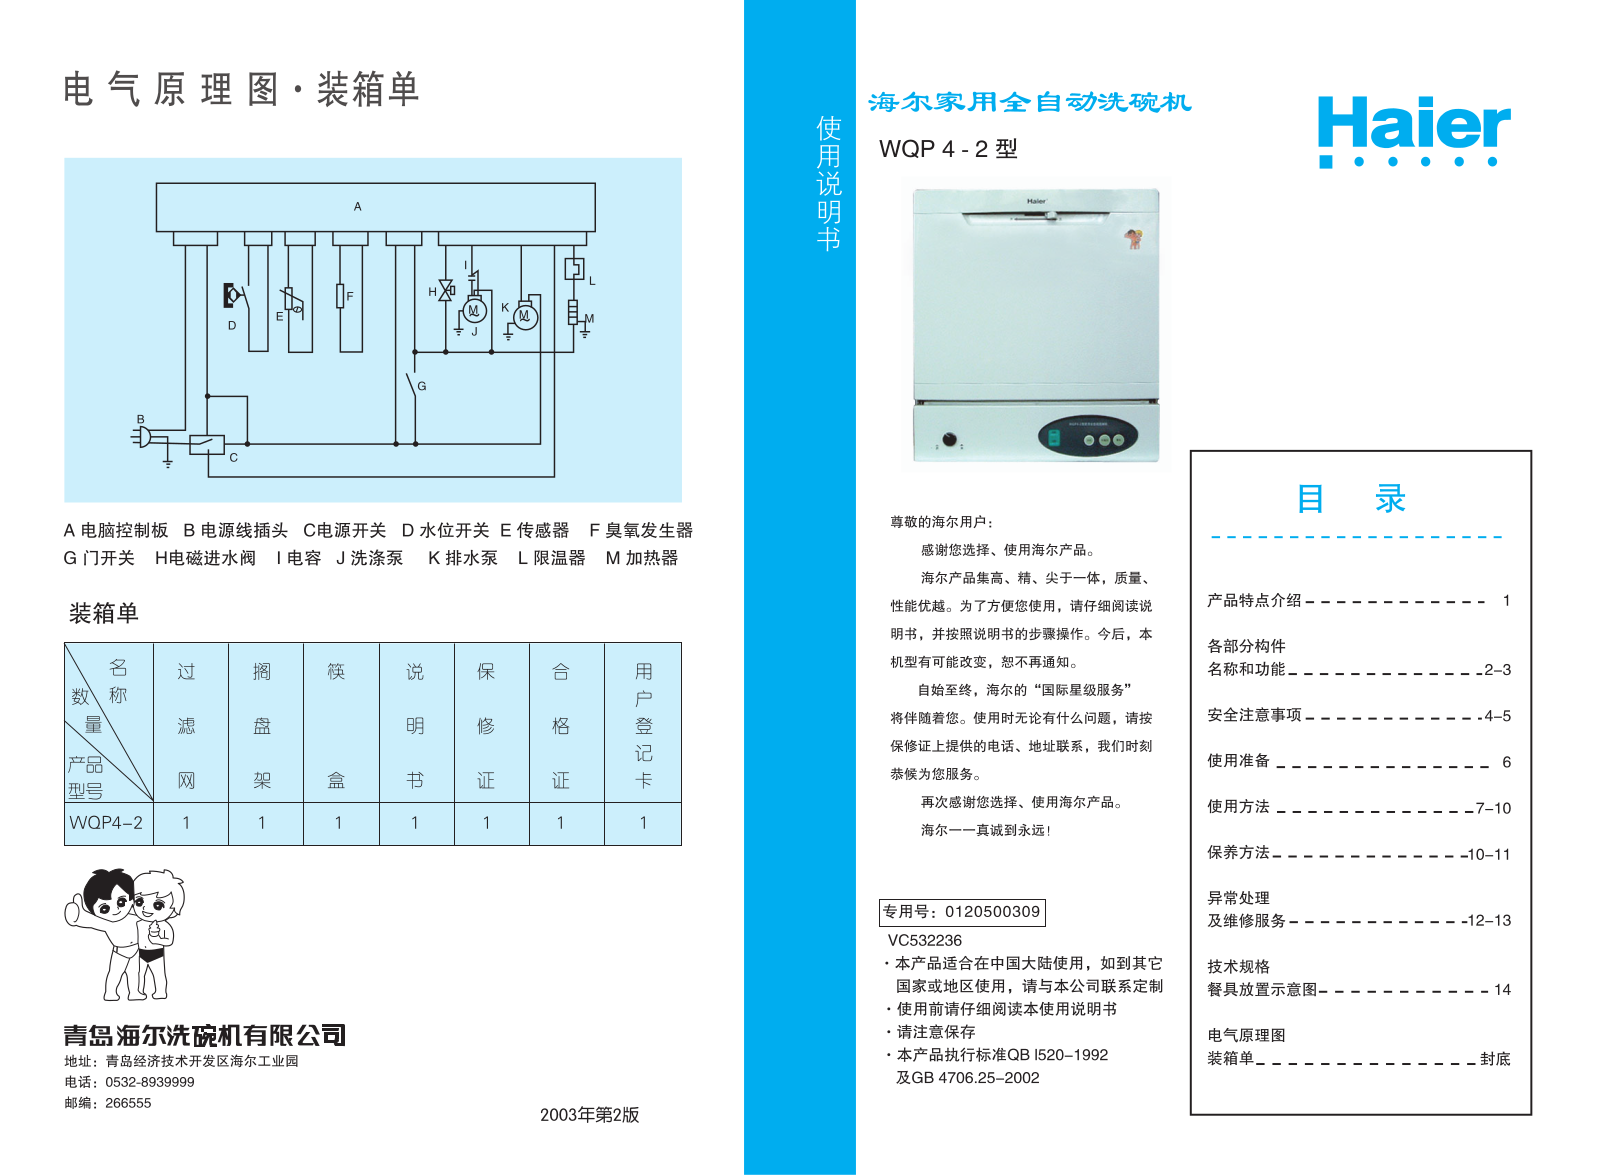 Haier WQP4-2 User Manual